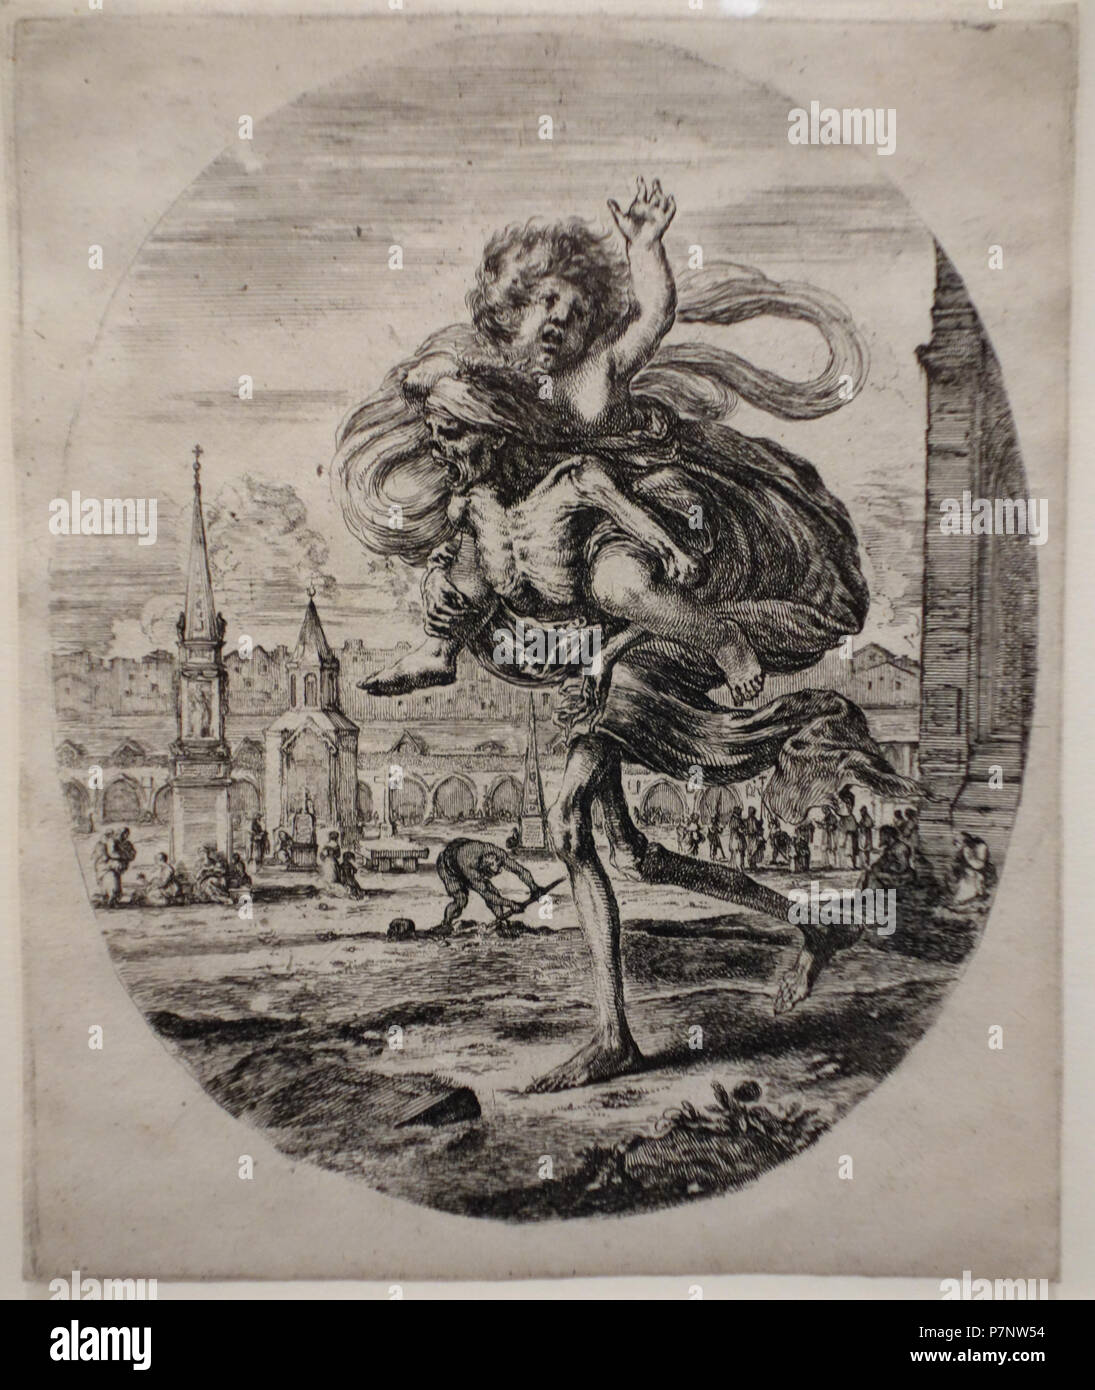 N/A. N/A 370 Les cinq décès - Décès portant un enfant, par Stefano Della Bella, ch. 1648, gravure - National Museum of Western Art, Tokyo - DSC08338 Banque D'Images